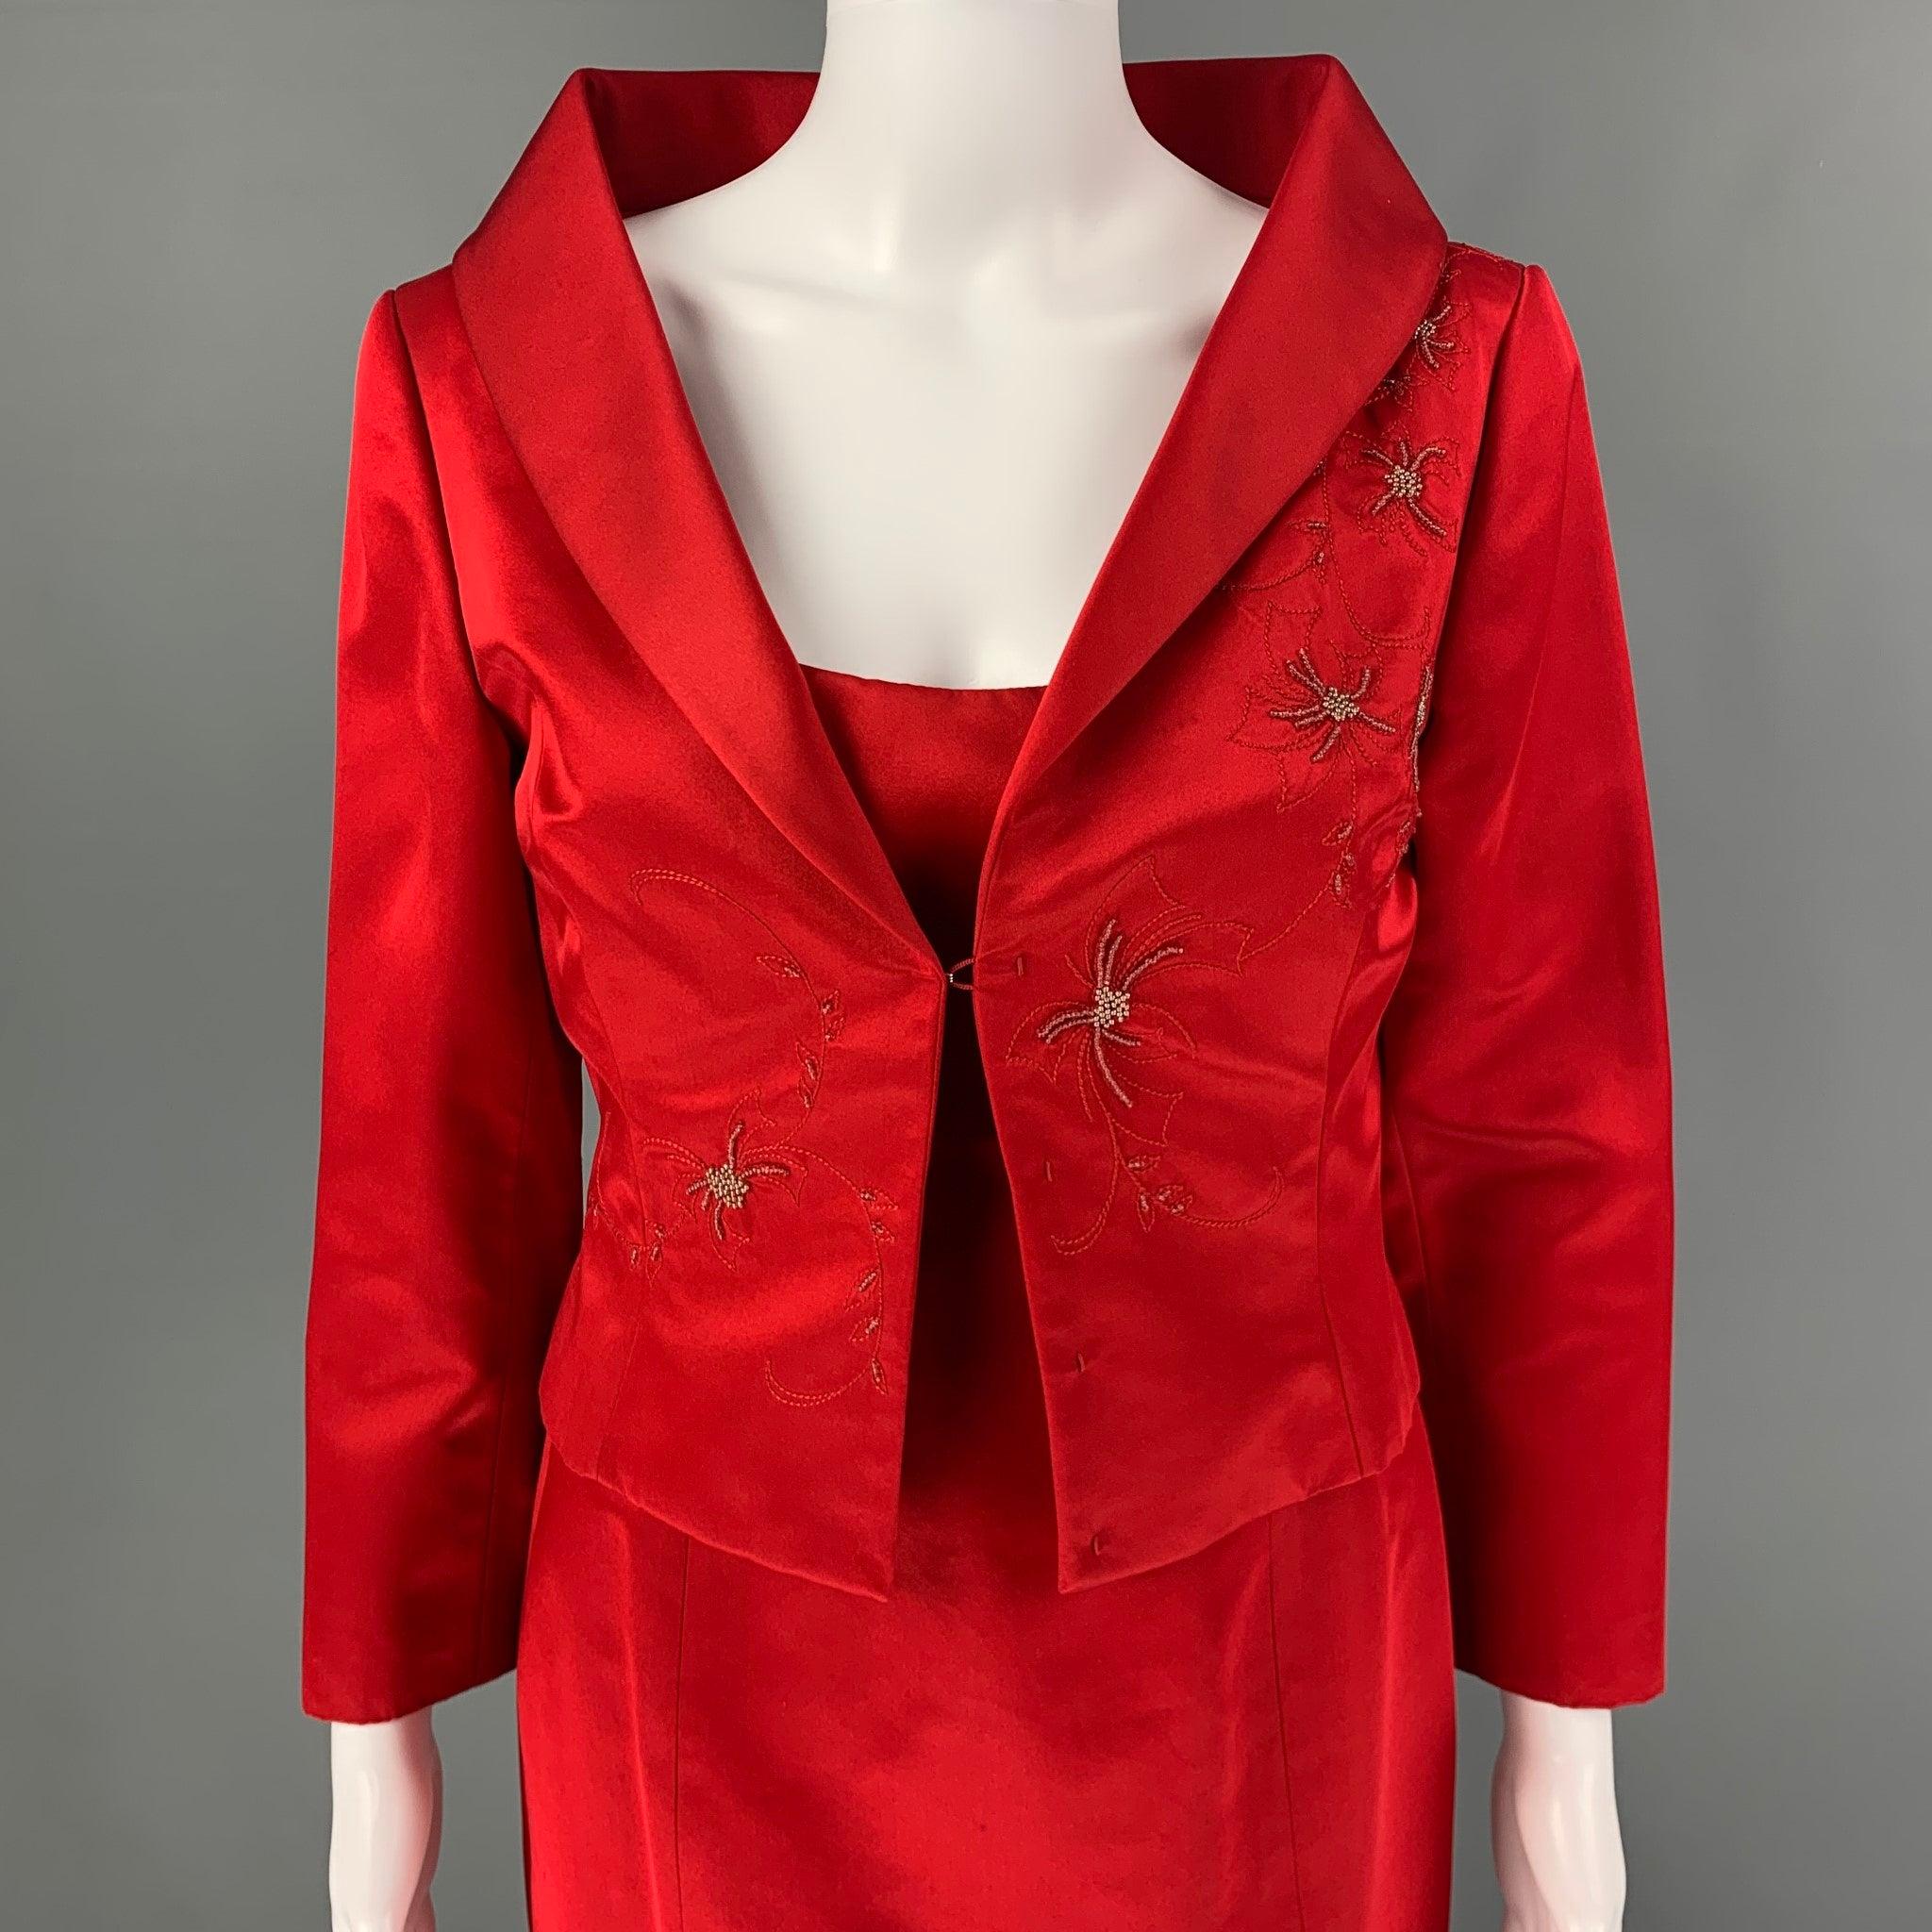 L'ensemble 2 pièces RICHARD TYLER Couture est présenté dans un tissu rouge de soie et de rayonne. Il comprend une robe de style aplati, des bretelles élastiques, une fermeture à glissière latérale et une veste à col châle ornée de